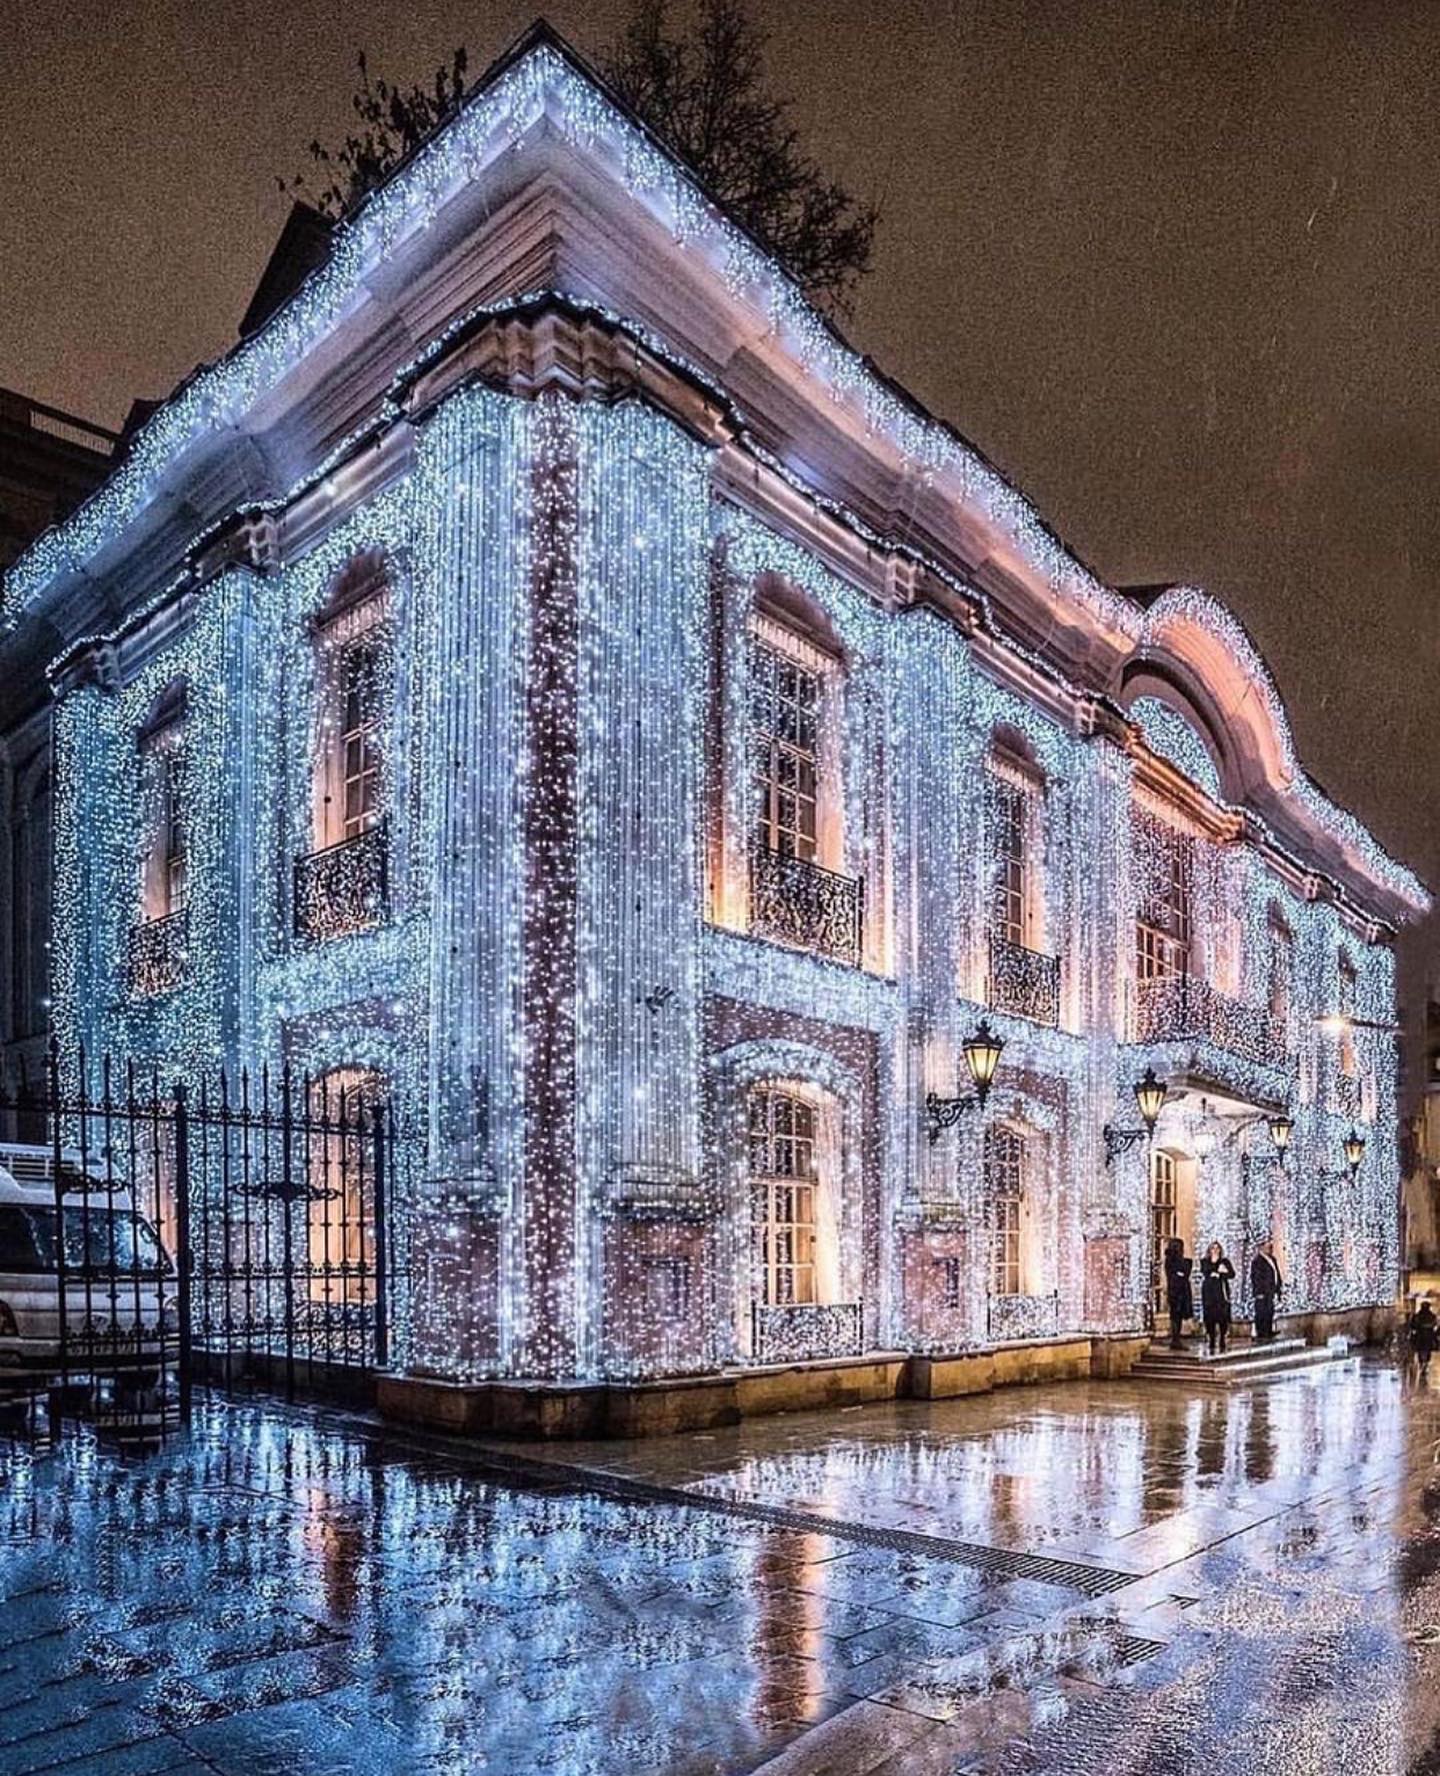 Χριστουγεννιάτικα φώτα της Μόσχας, Ρωσία από την @elena.krizhevskaya #bestintravel #tra... 5